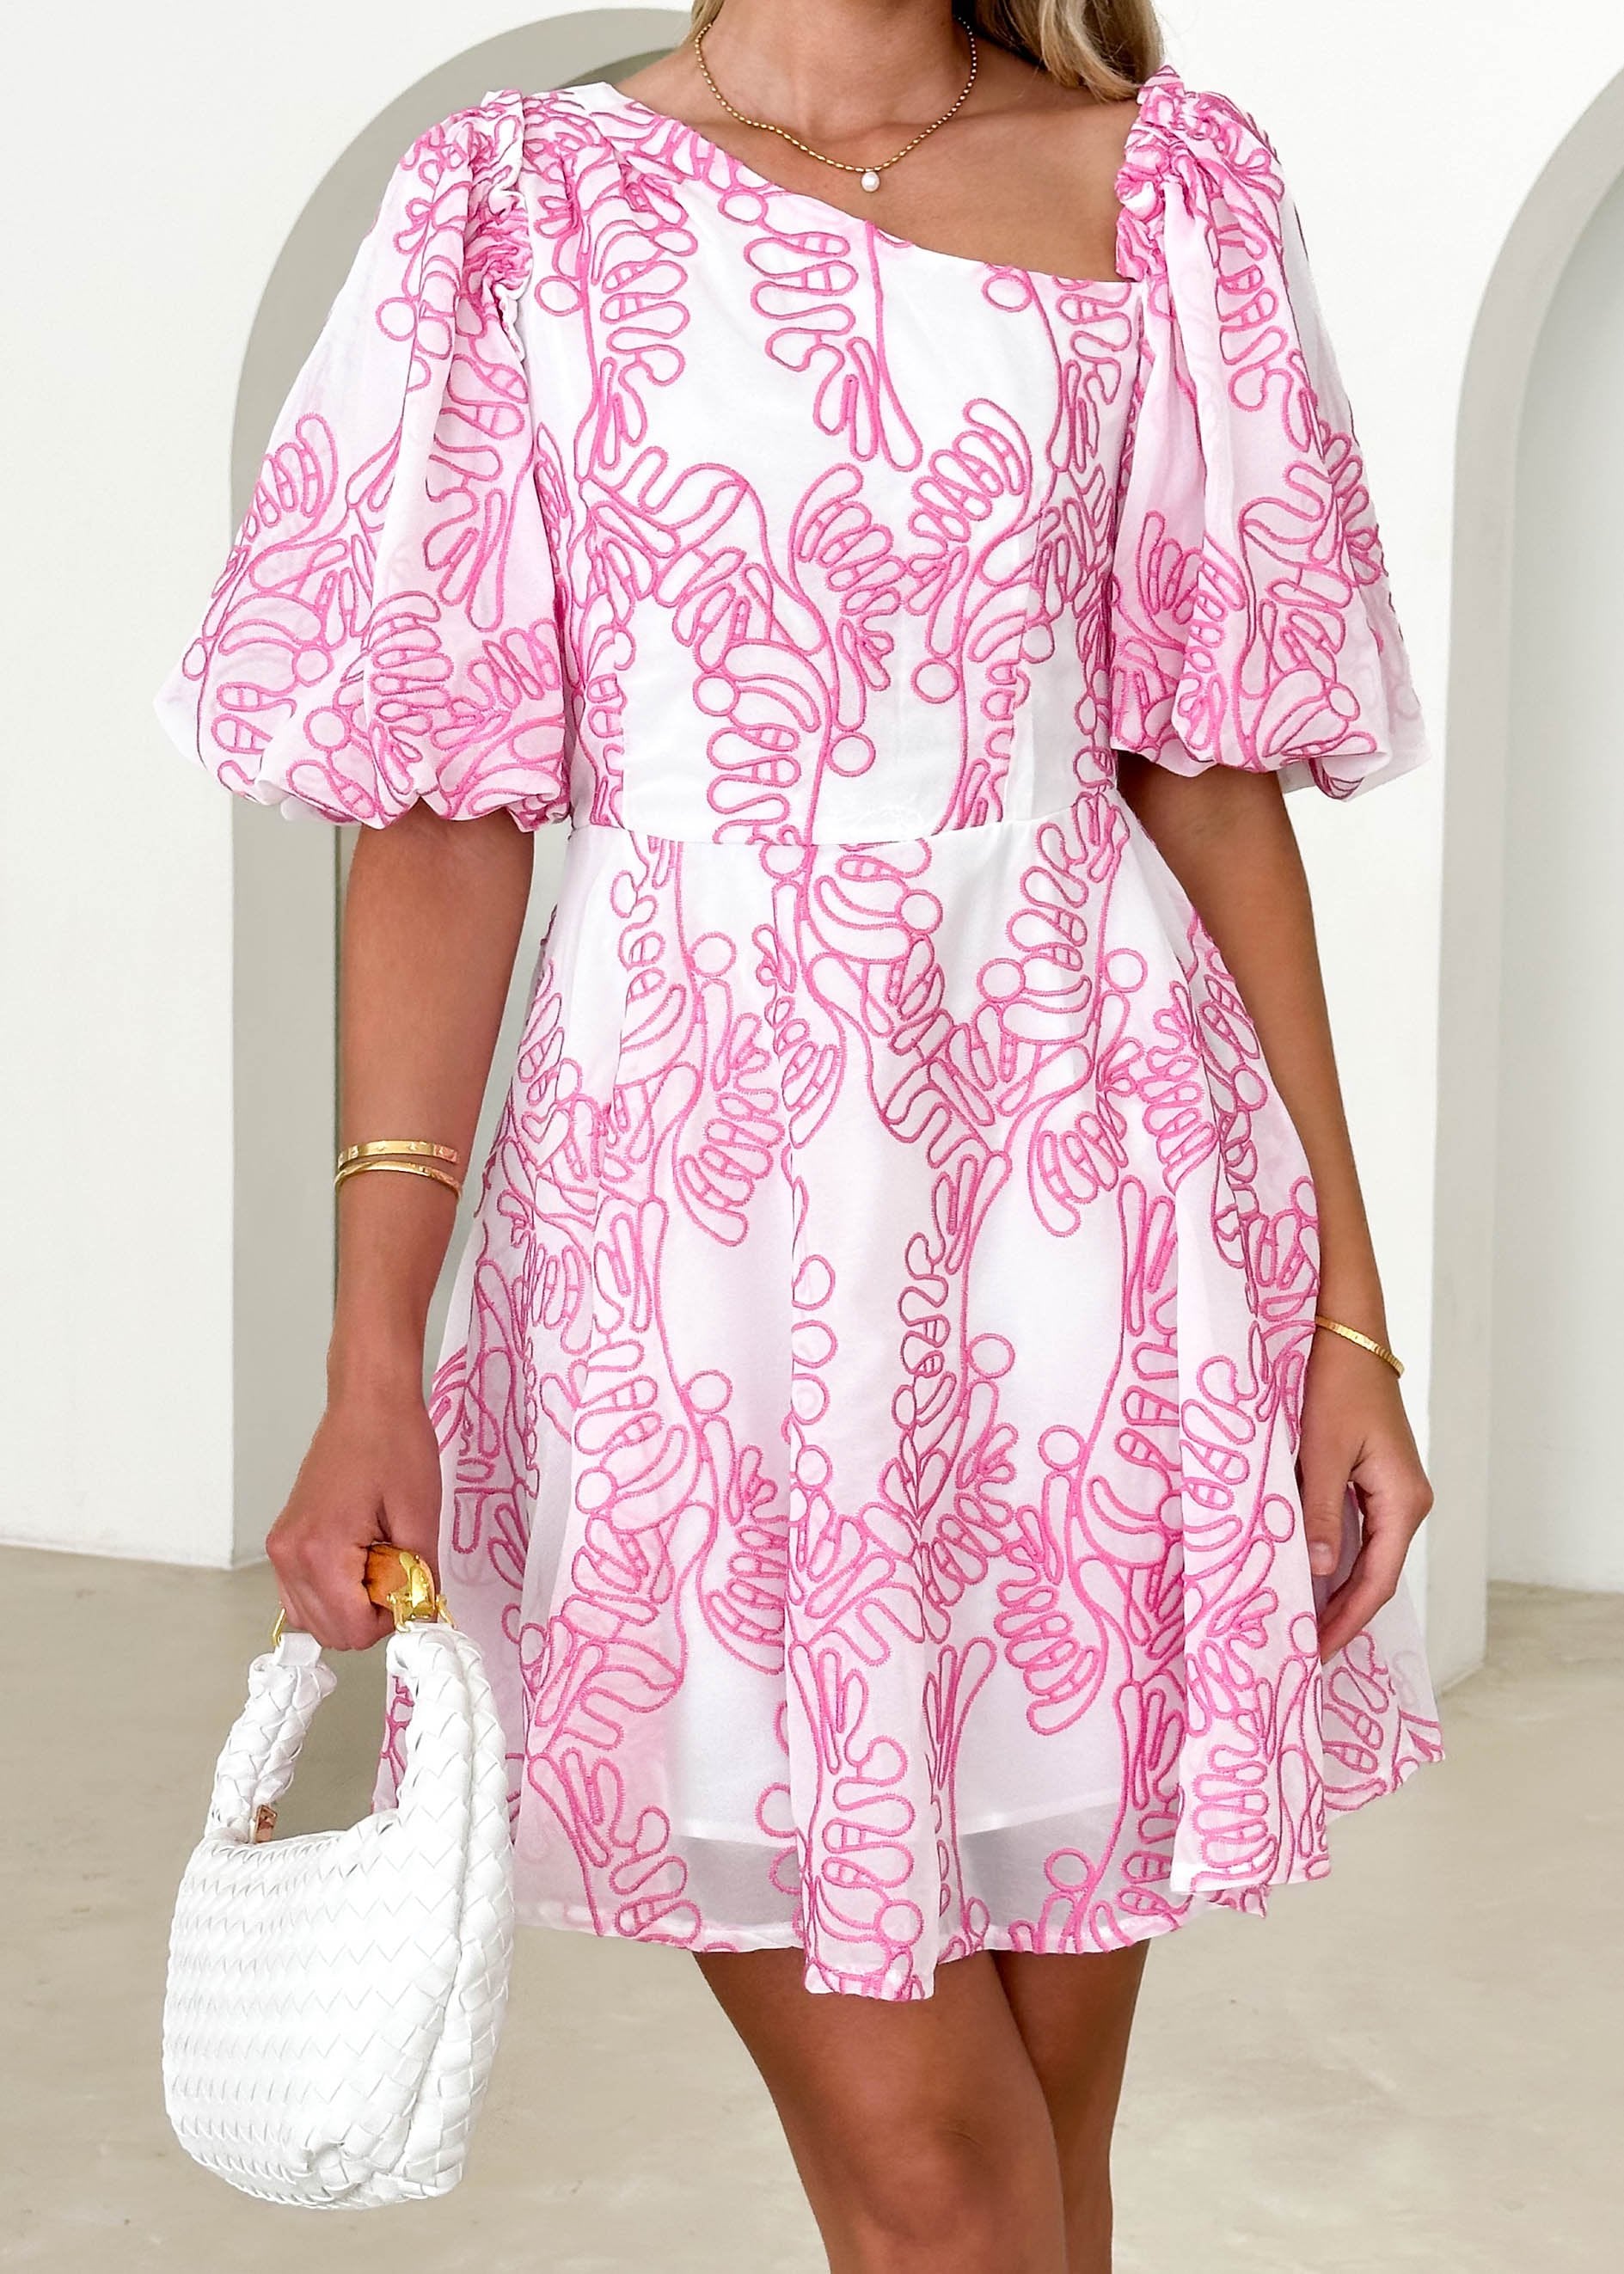 Picer One Shoulder Dress - Pink Embroidered